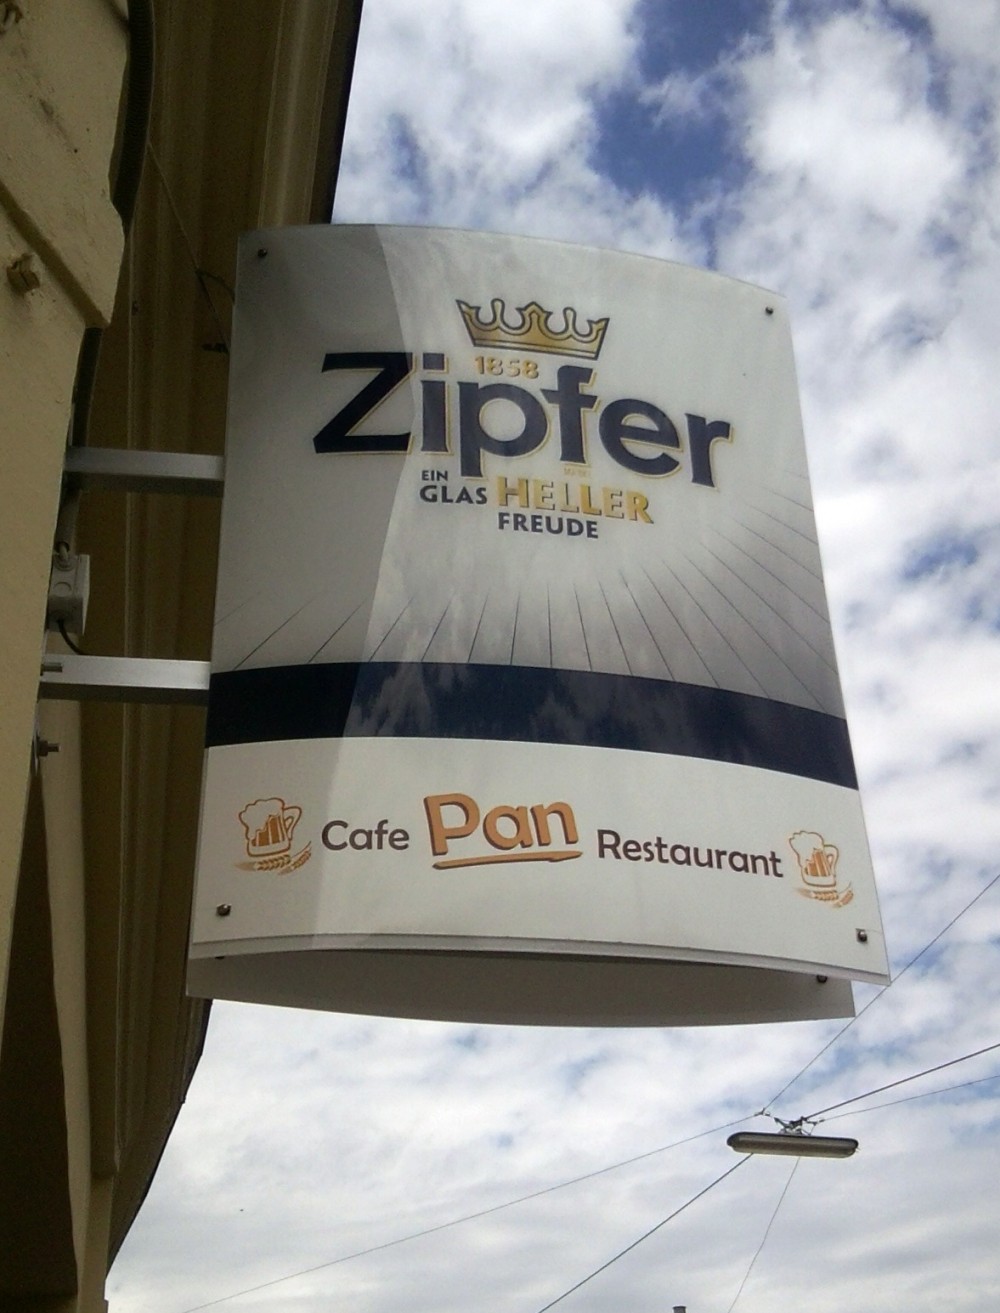 Restaurant Pan Lokalaußenreklame - Café Restaurant Pan - Wien